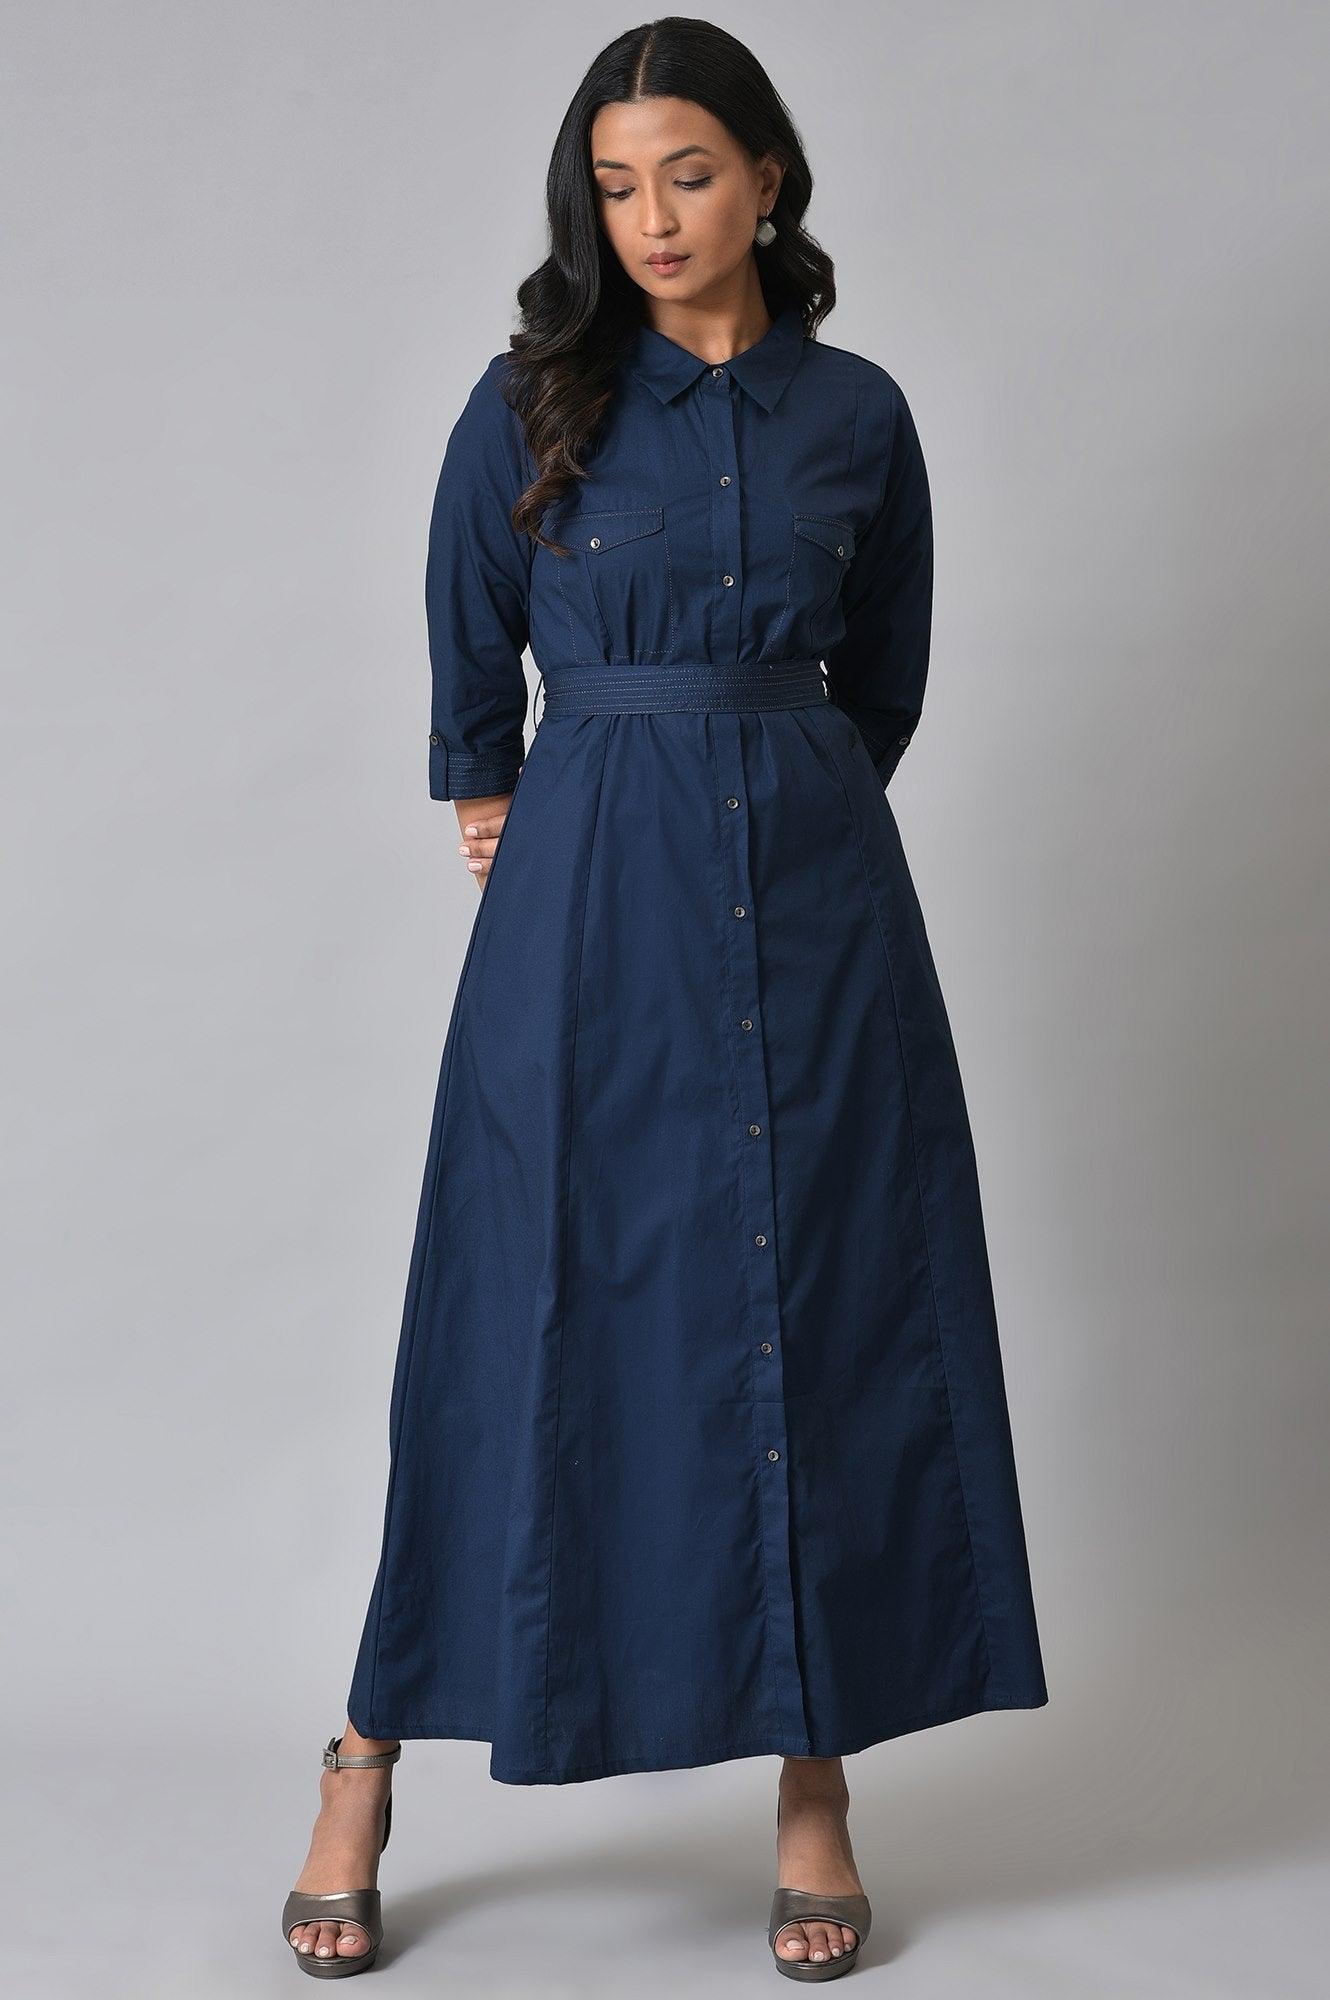 Navy Blue Long Shirt Dress With Belt - wforwoman